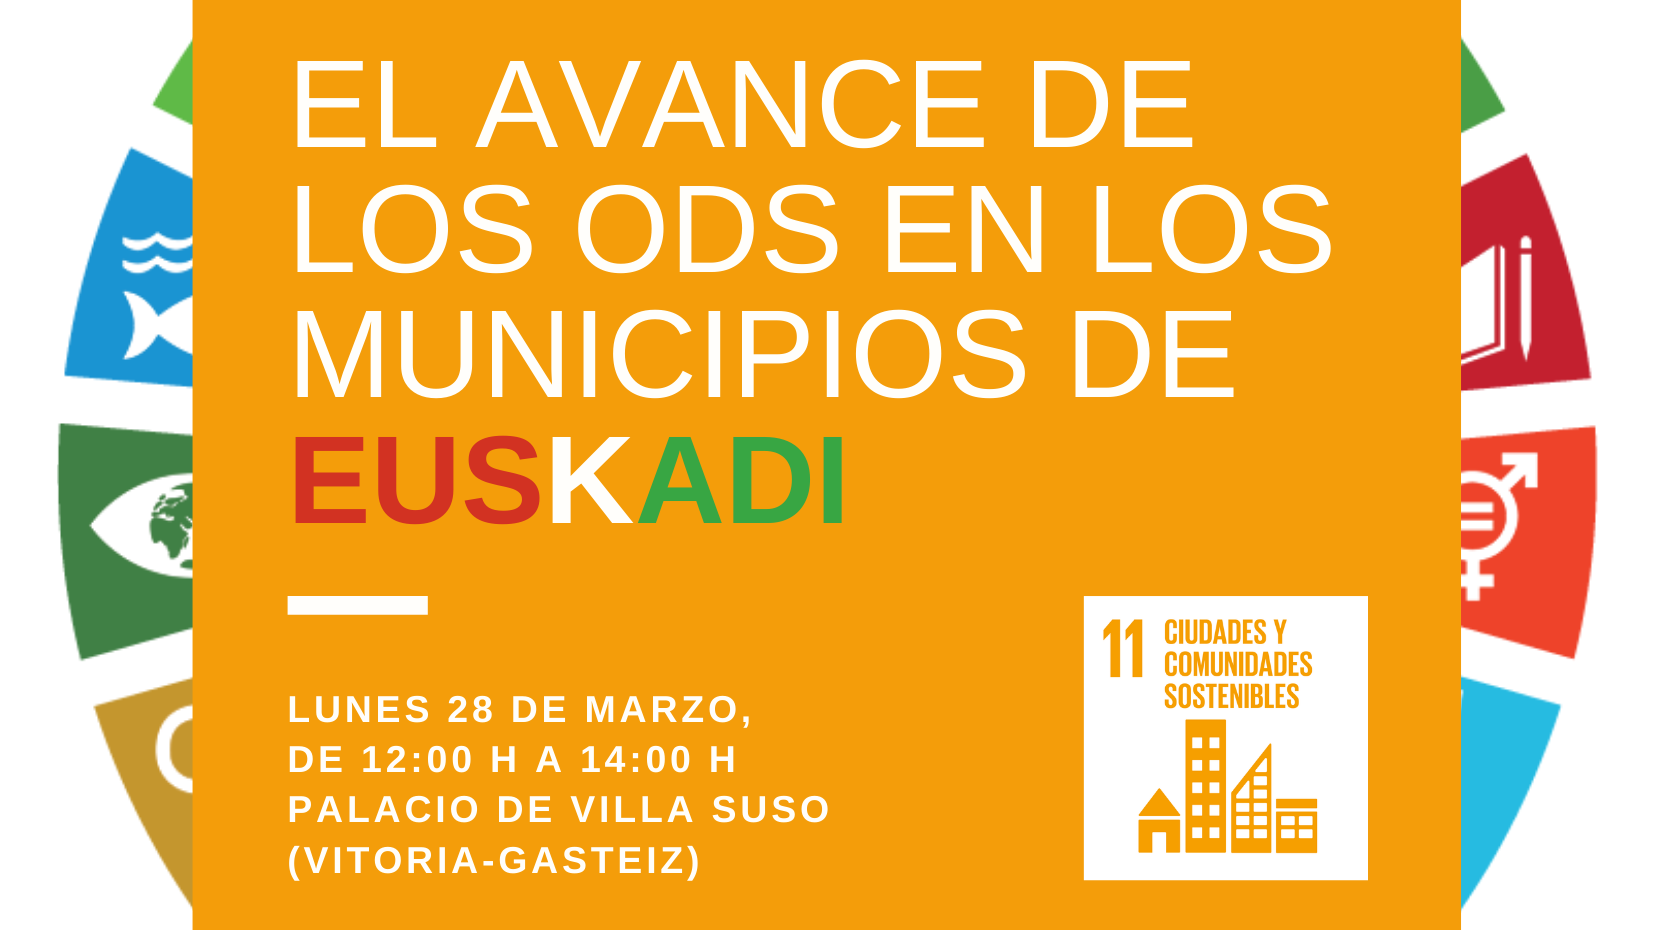 El avance de los ODS en los municipios de Euskadi